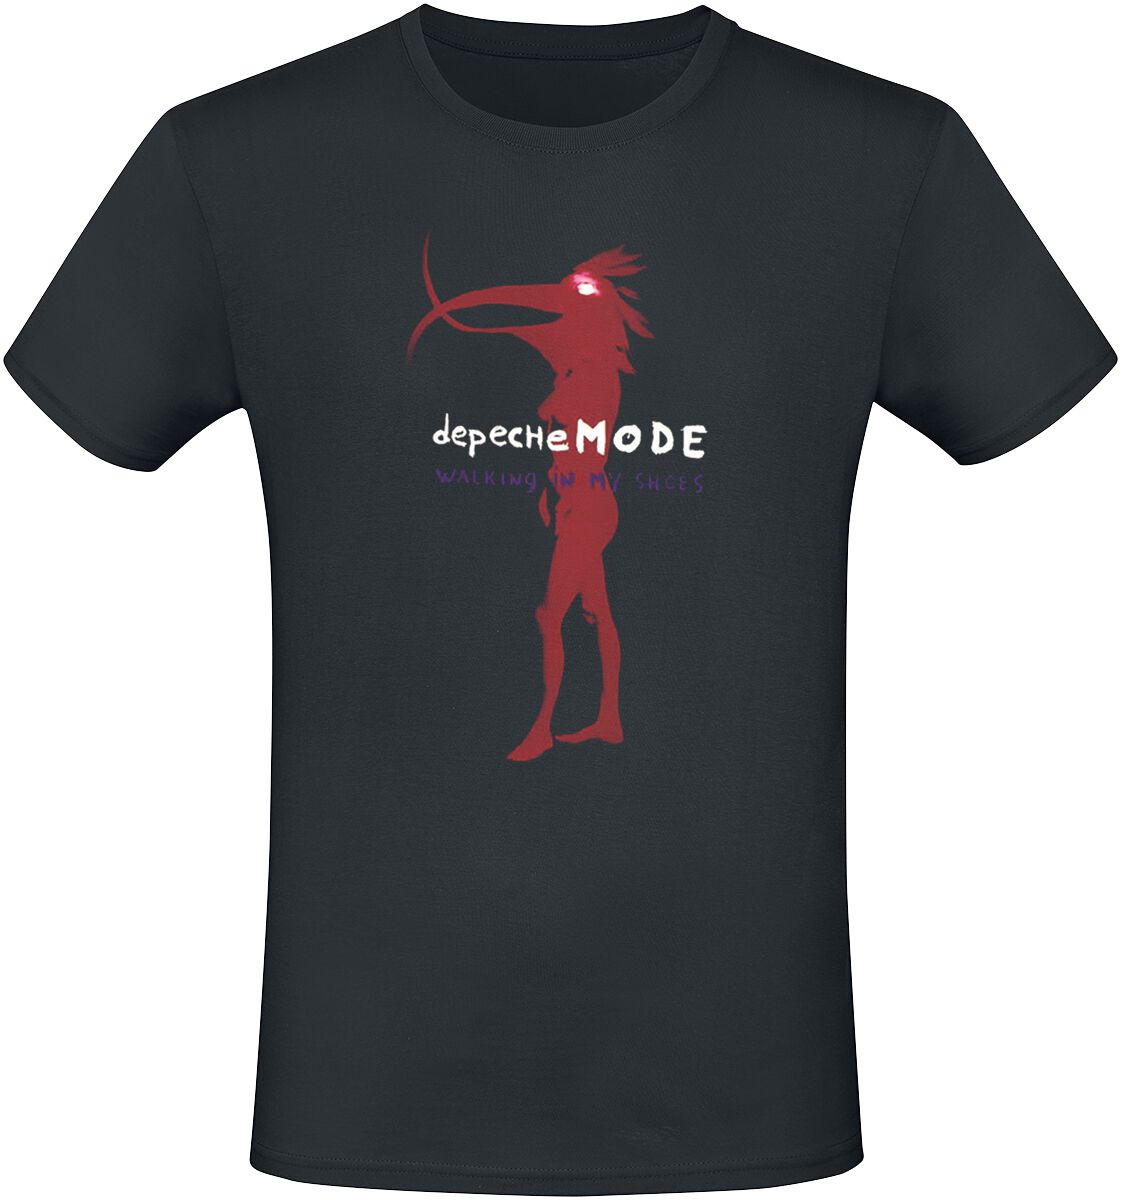 Depeche Mode Walking In My Shoes T-Shirt schwarz product